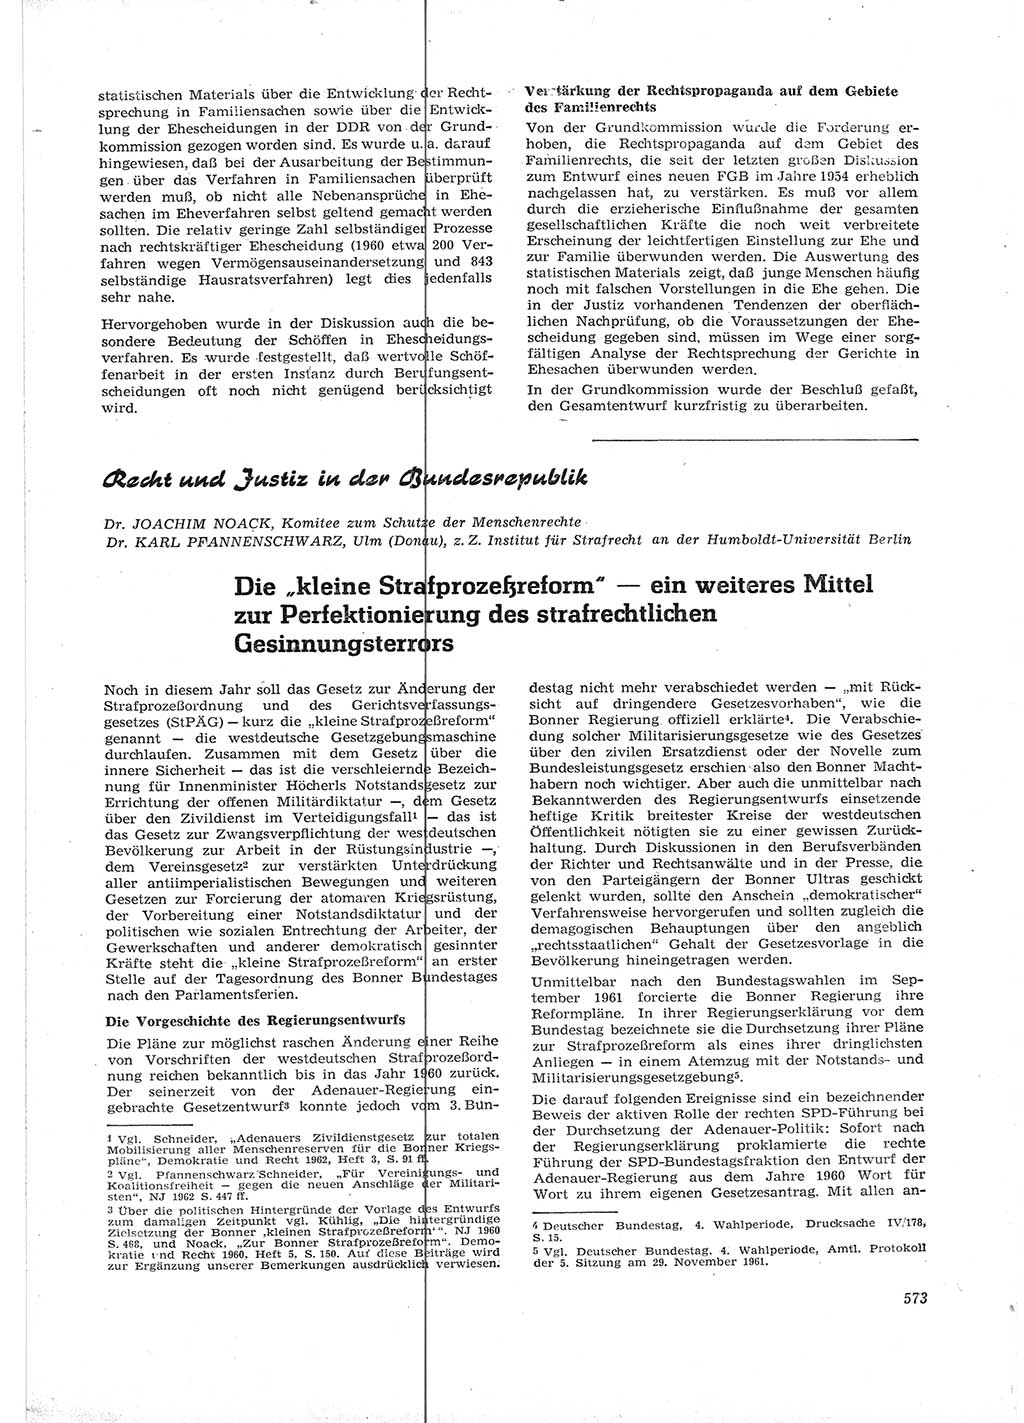 Neue Justiz (NJ), Zeitschrift für Recht und Rechtswissenschaft [Deutsche Demokratische Republik (DDR)], 16. Jahrgang 1962, Seite 573 (NJ DDR 1962, S. 573)